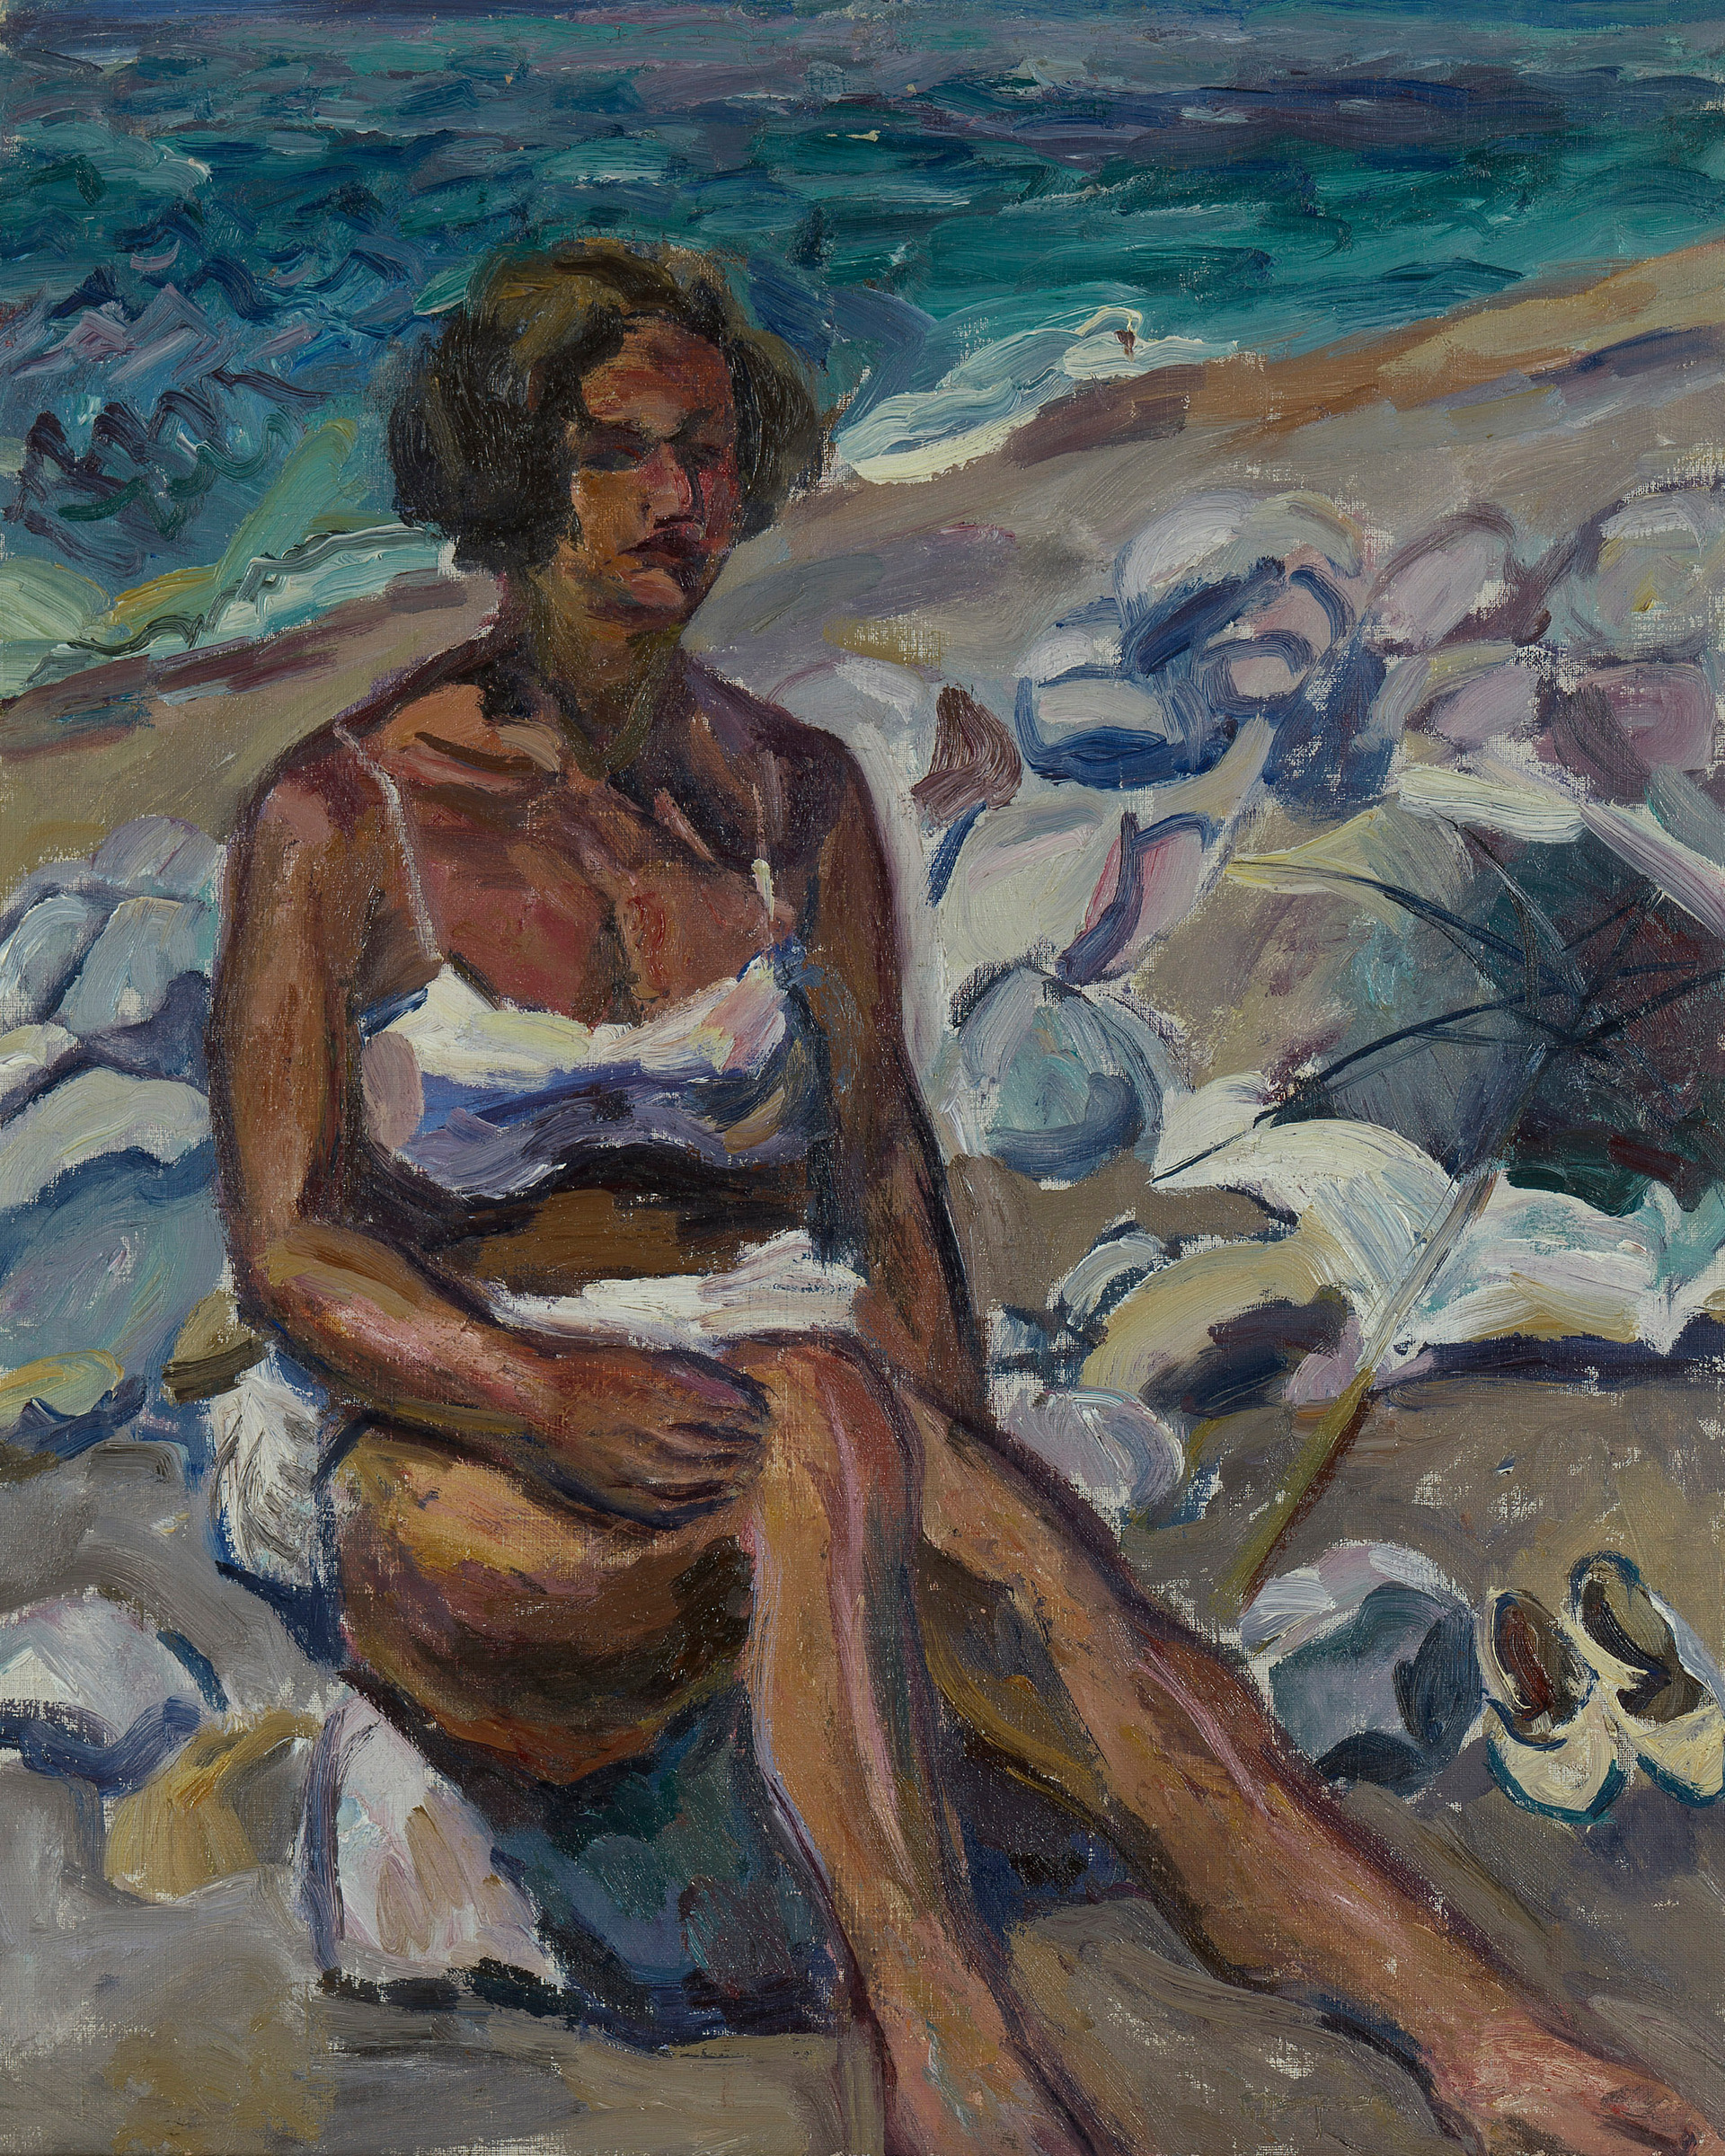 Woman on the Beach